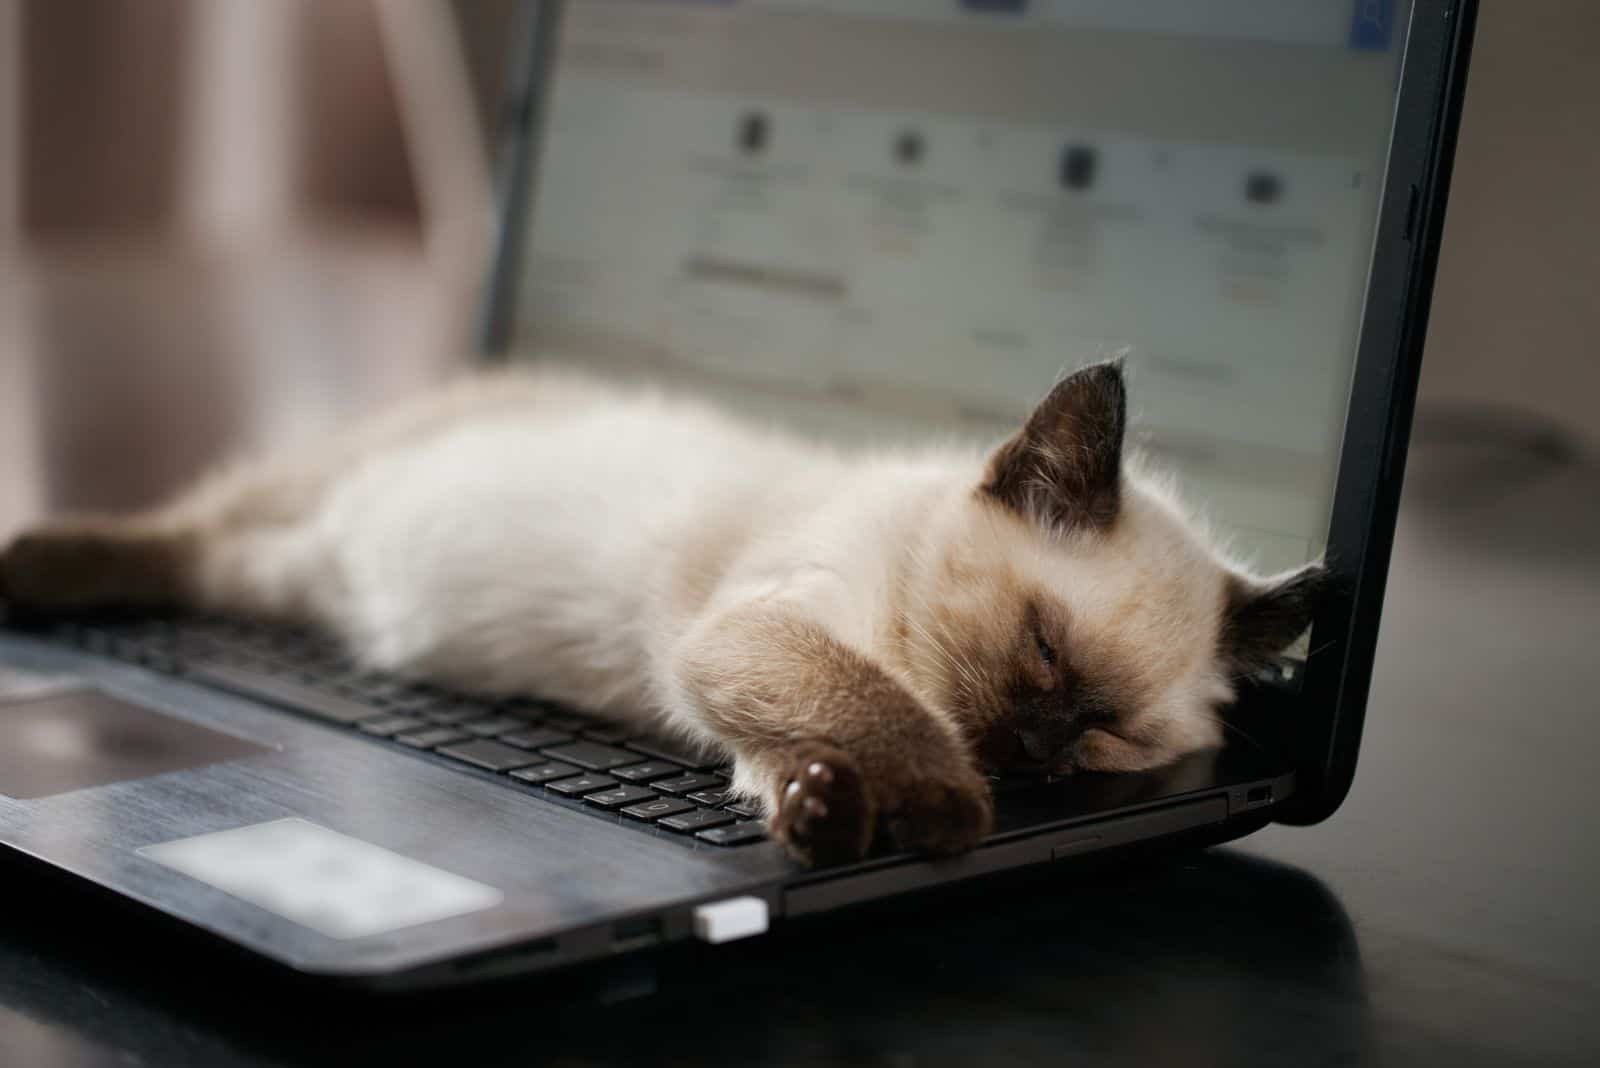 the kitten is sleeping on the laptop